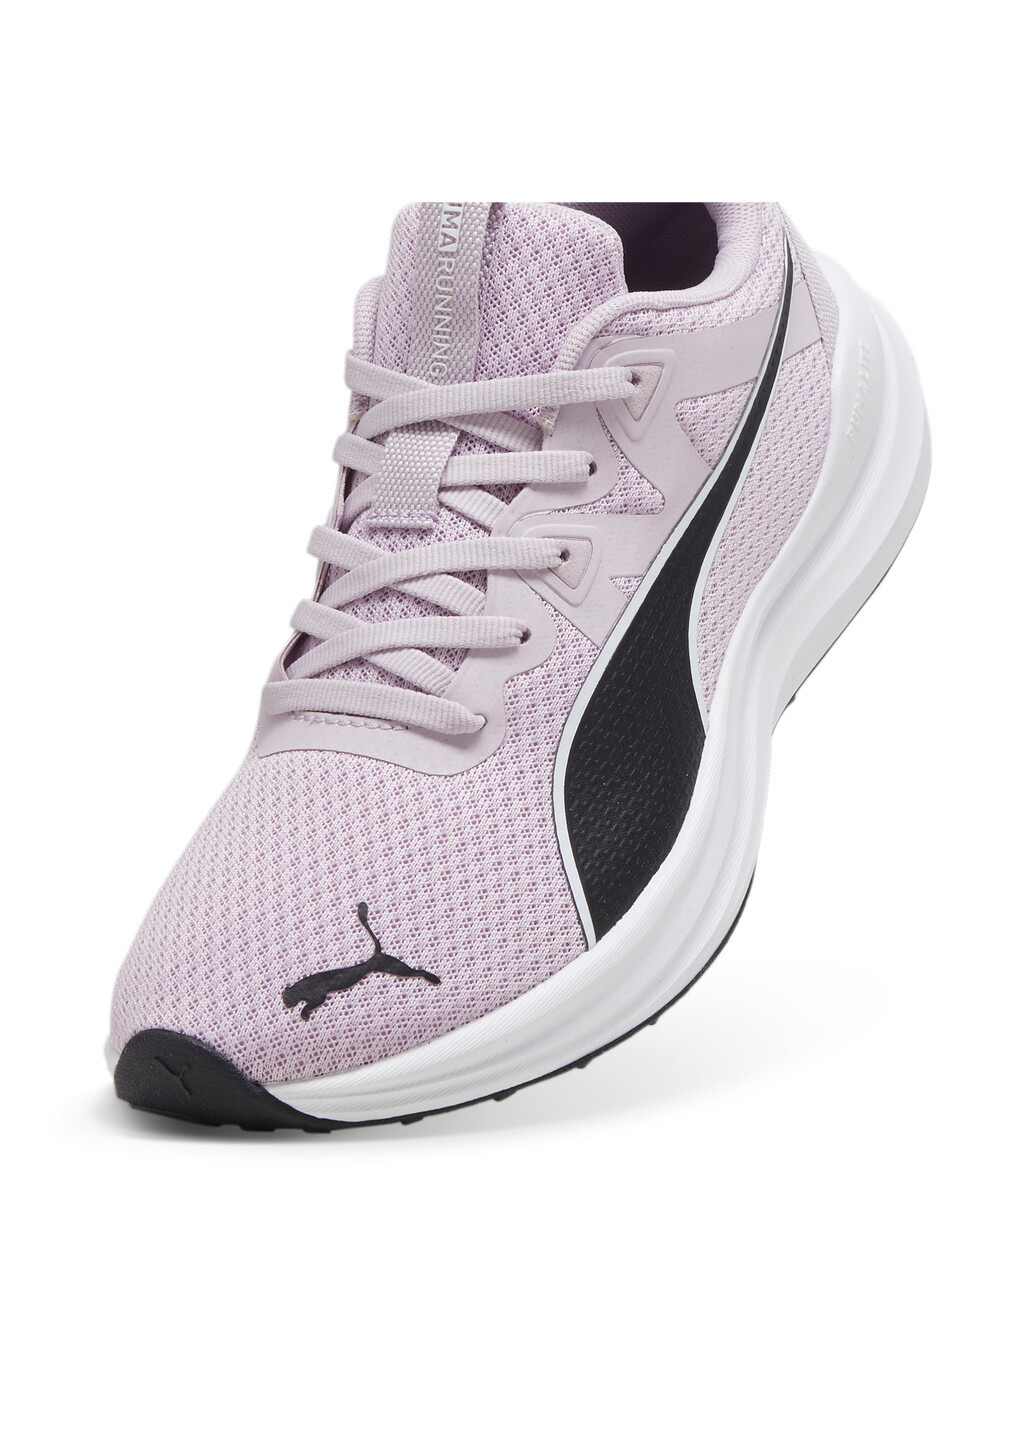 Пурпурные всесезонные кроссовки reflect lite running shoes Puma